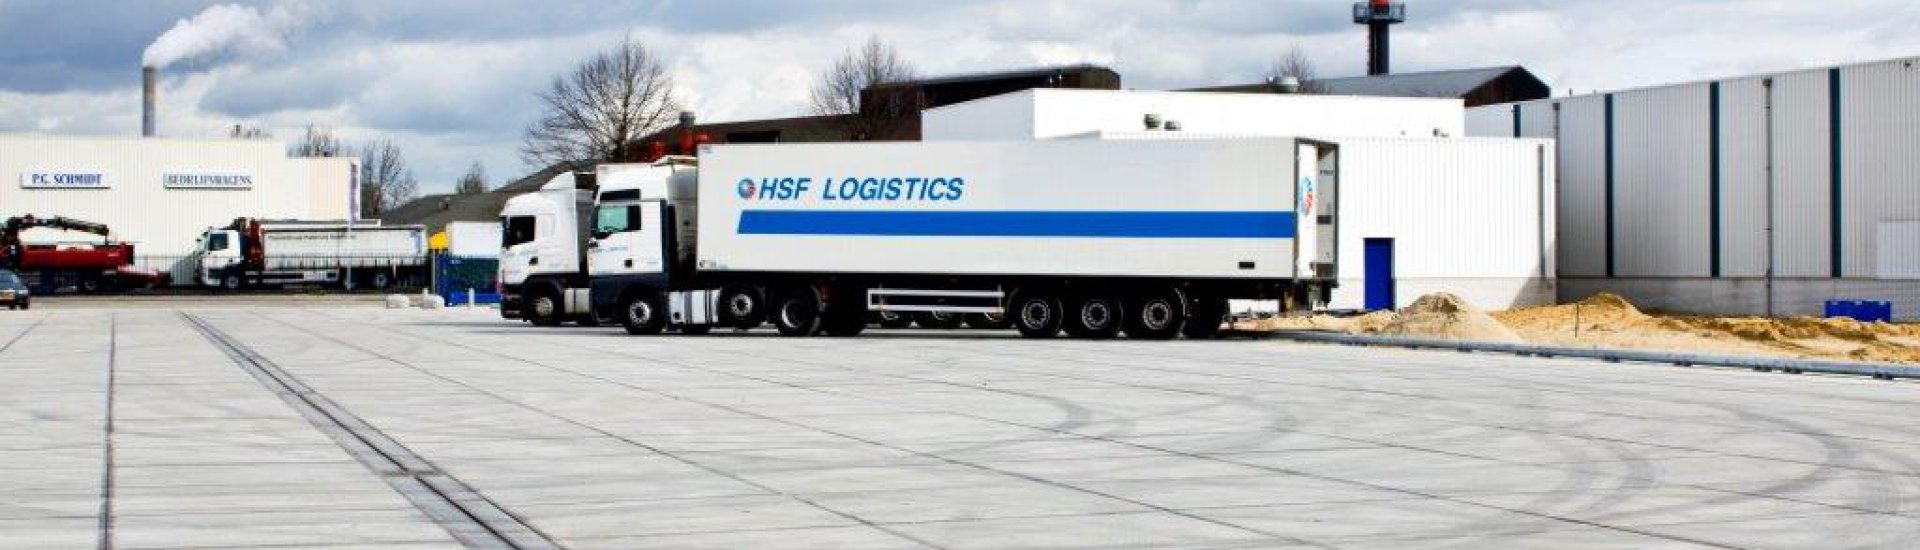 Meteoor - Oplossingen | Stelconbetonplaat biedt oplossing voor HSF logistics 